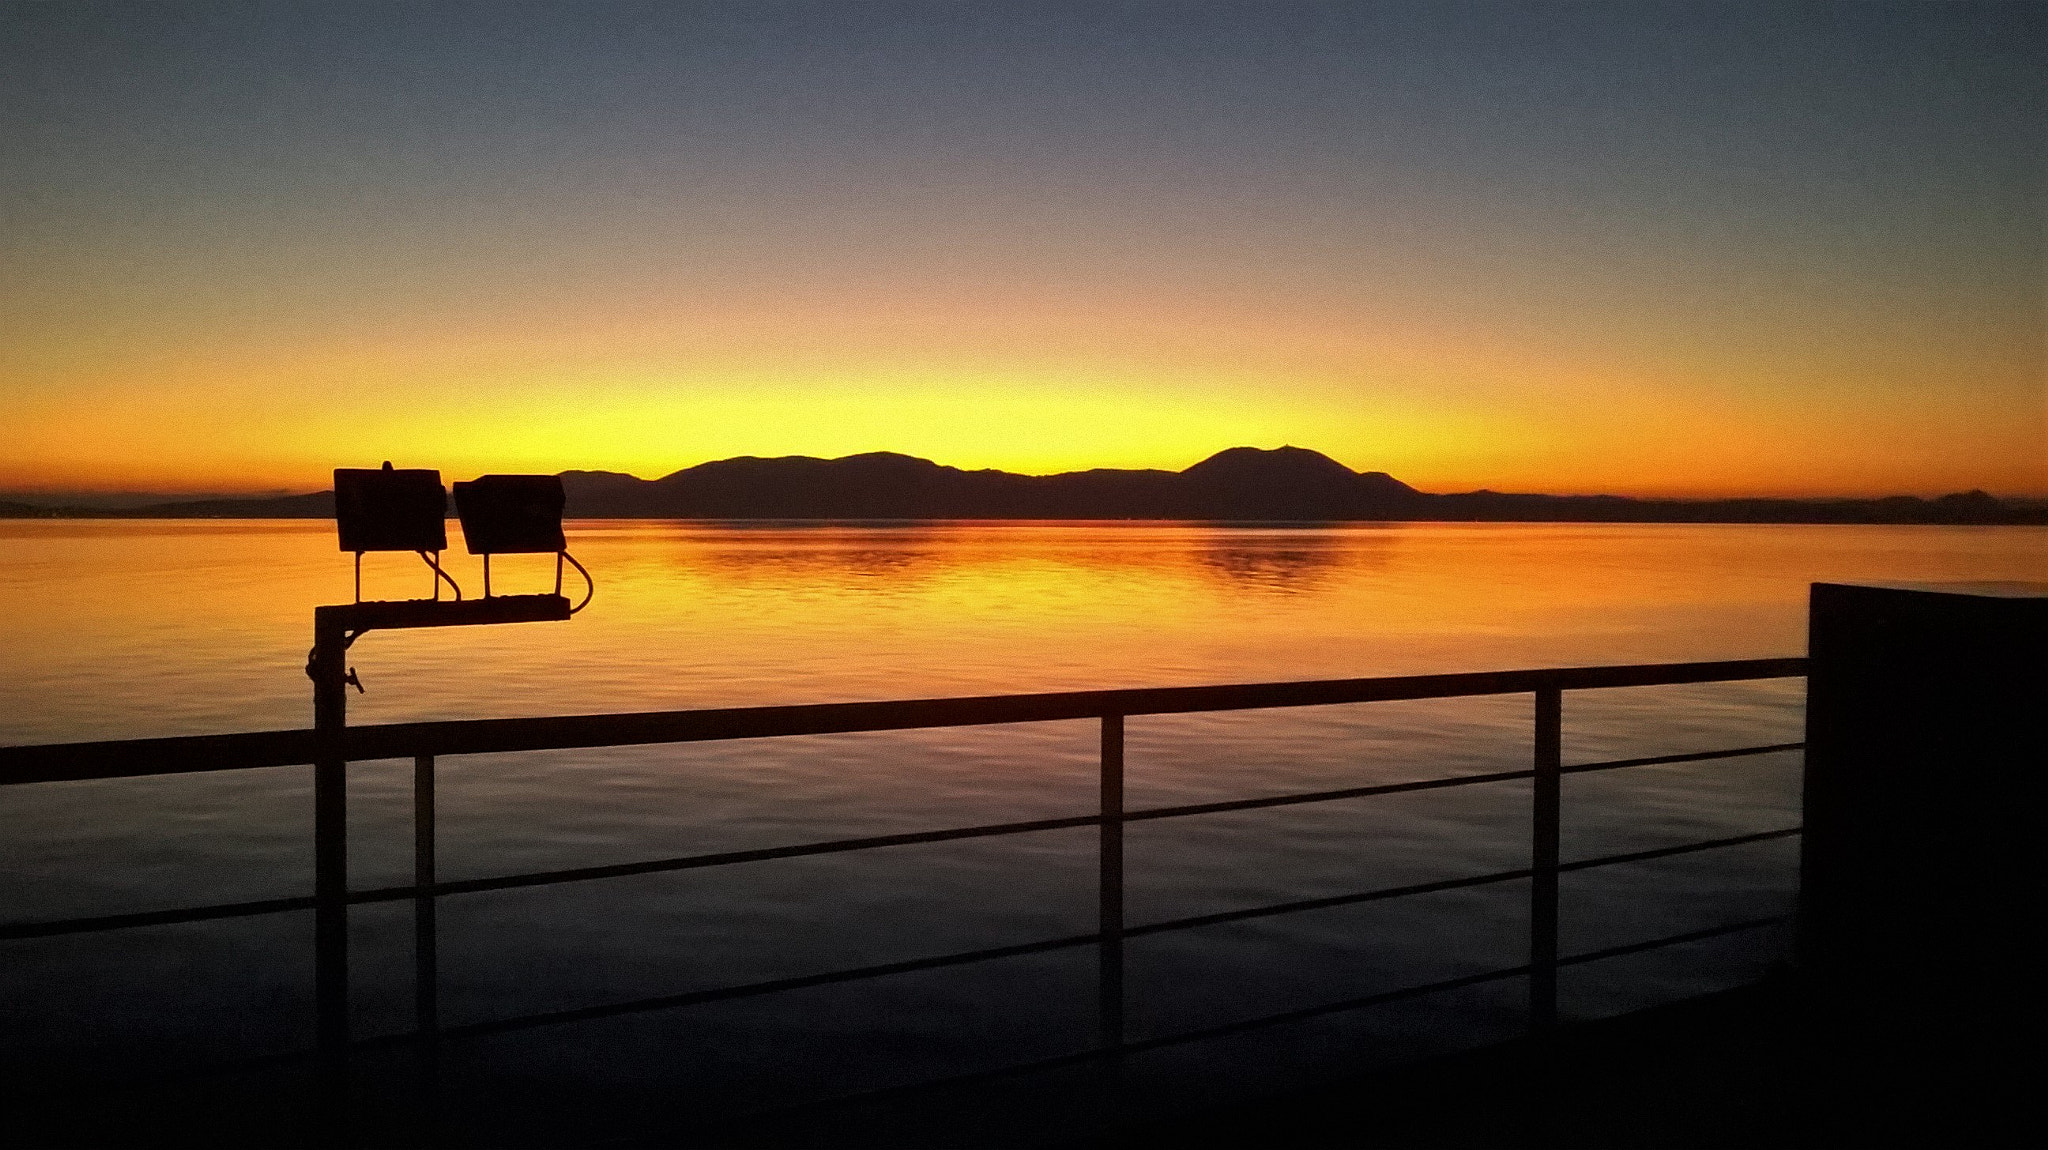 Nokia Lumia 635 sample photo. Ferry sunset photography